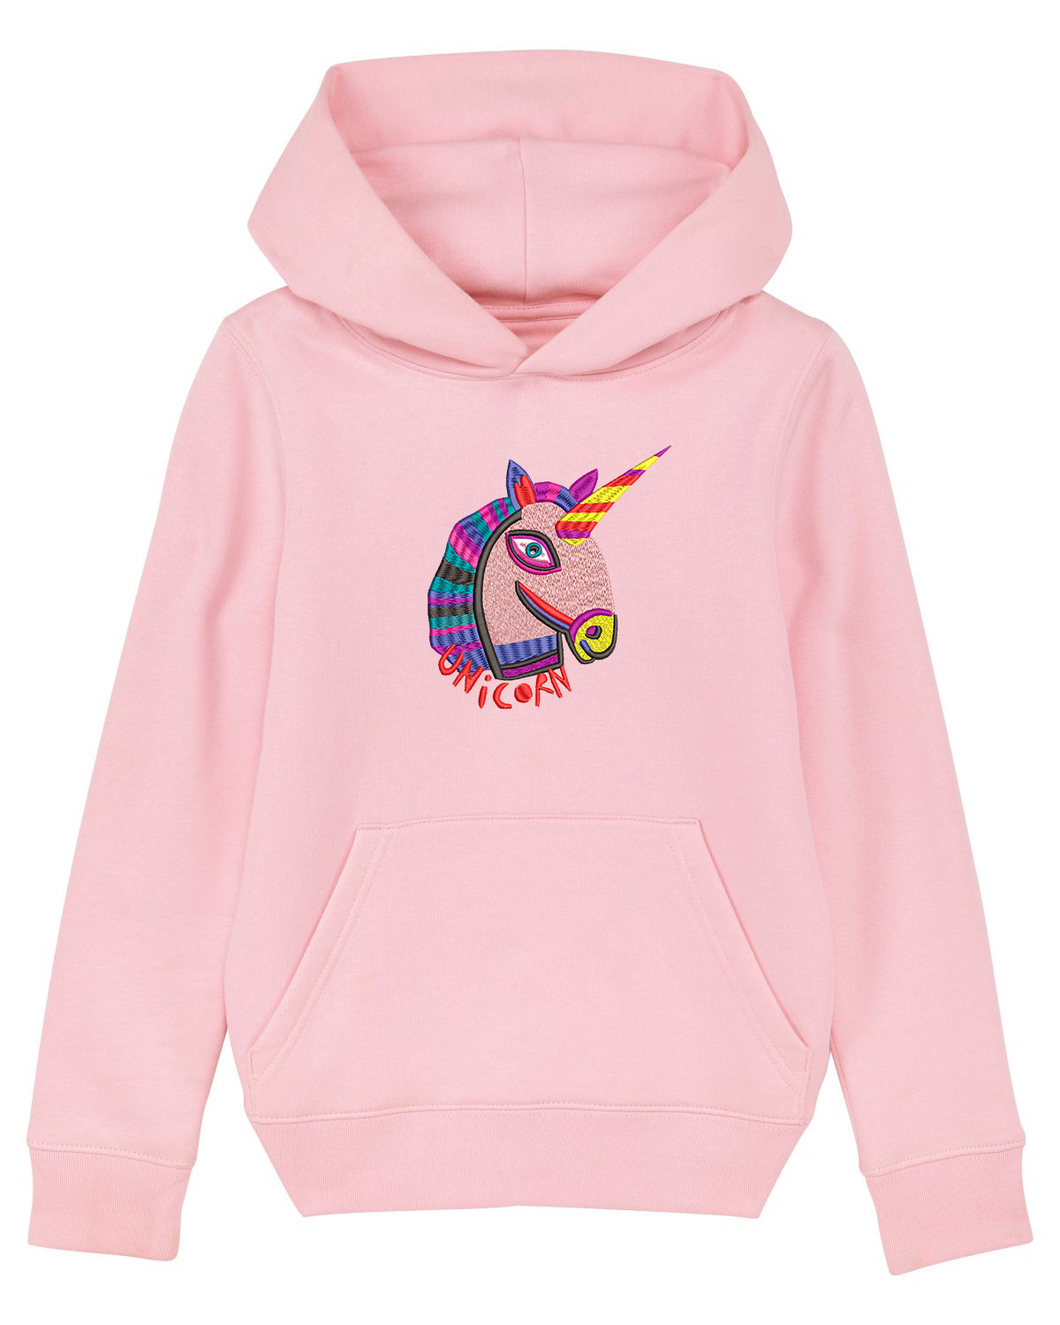 Unicorn 🦄- Embroidered UNISEX KIDS hoodie